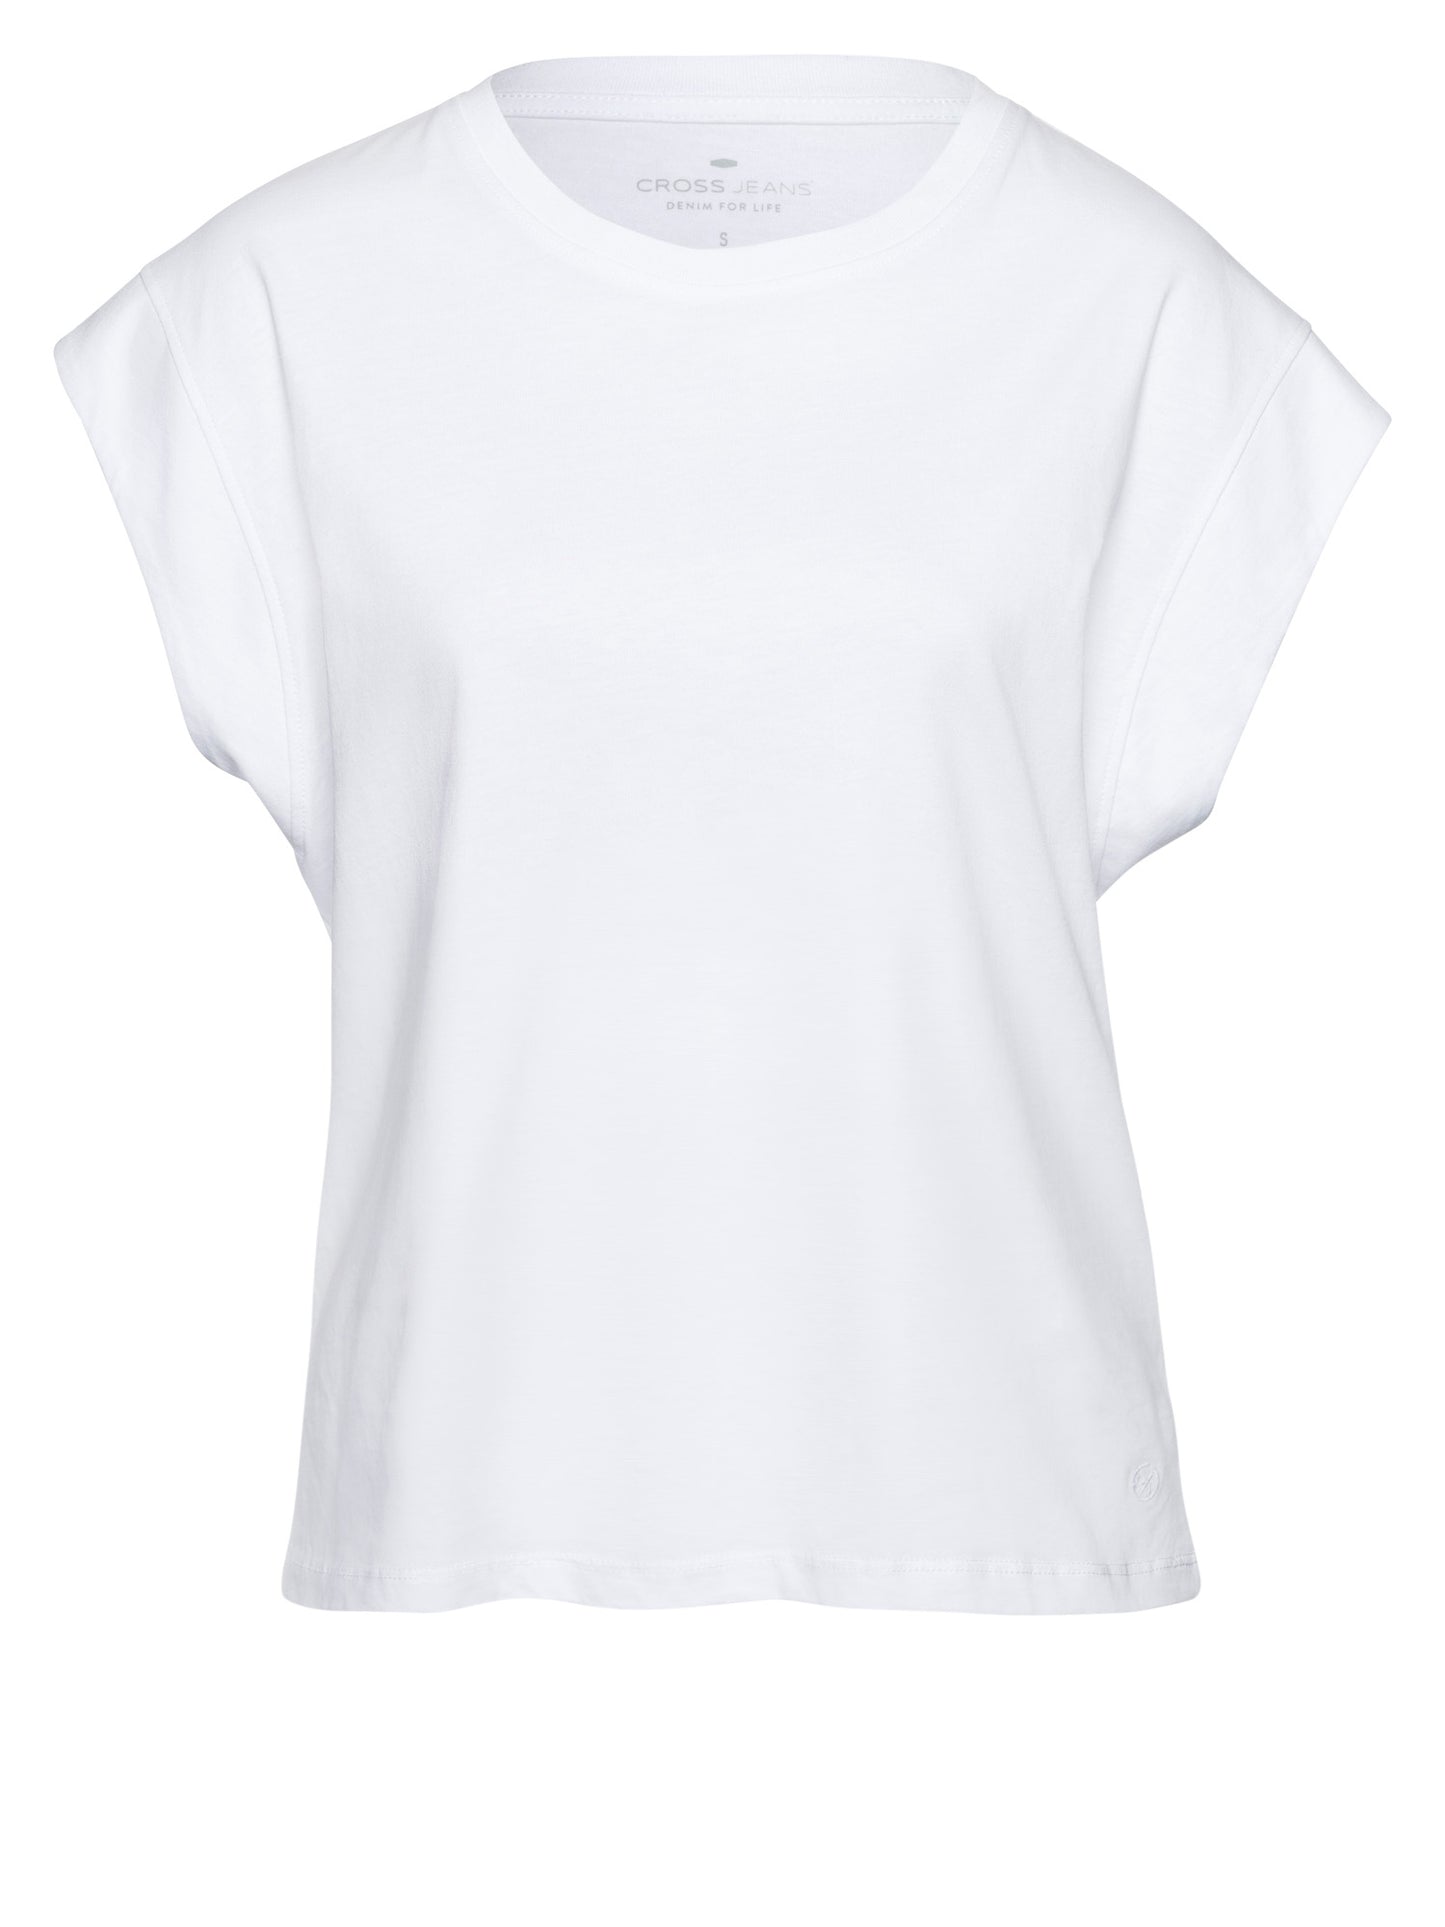 Damen Regular T-Shirt mit überschnittener Schulter weiß.